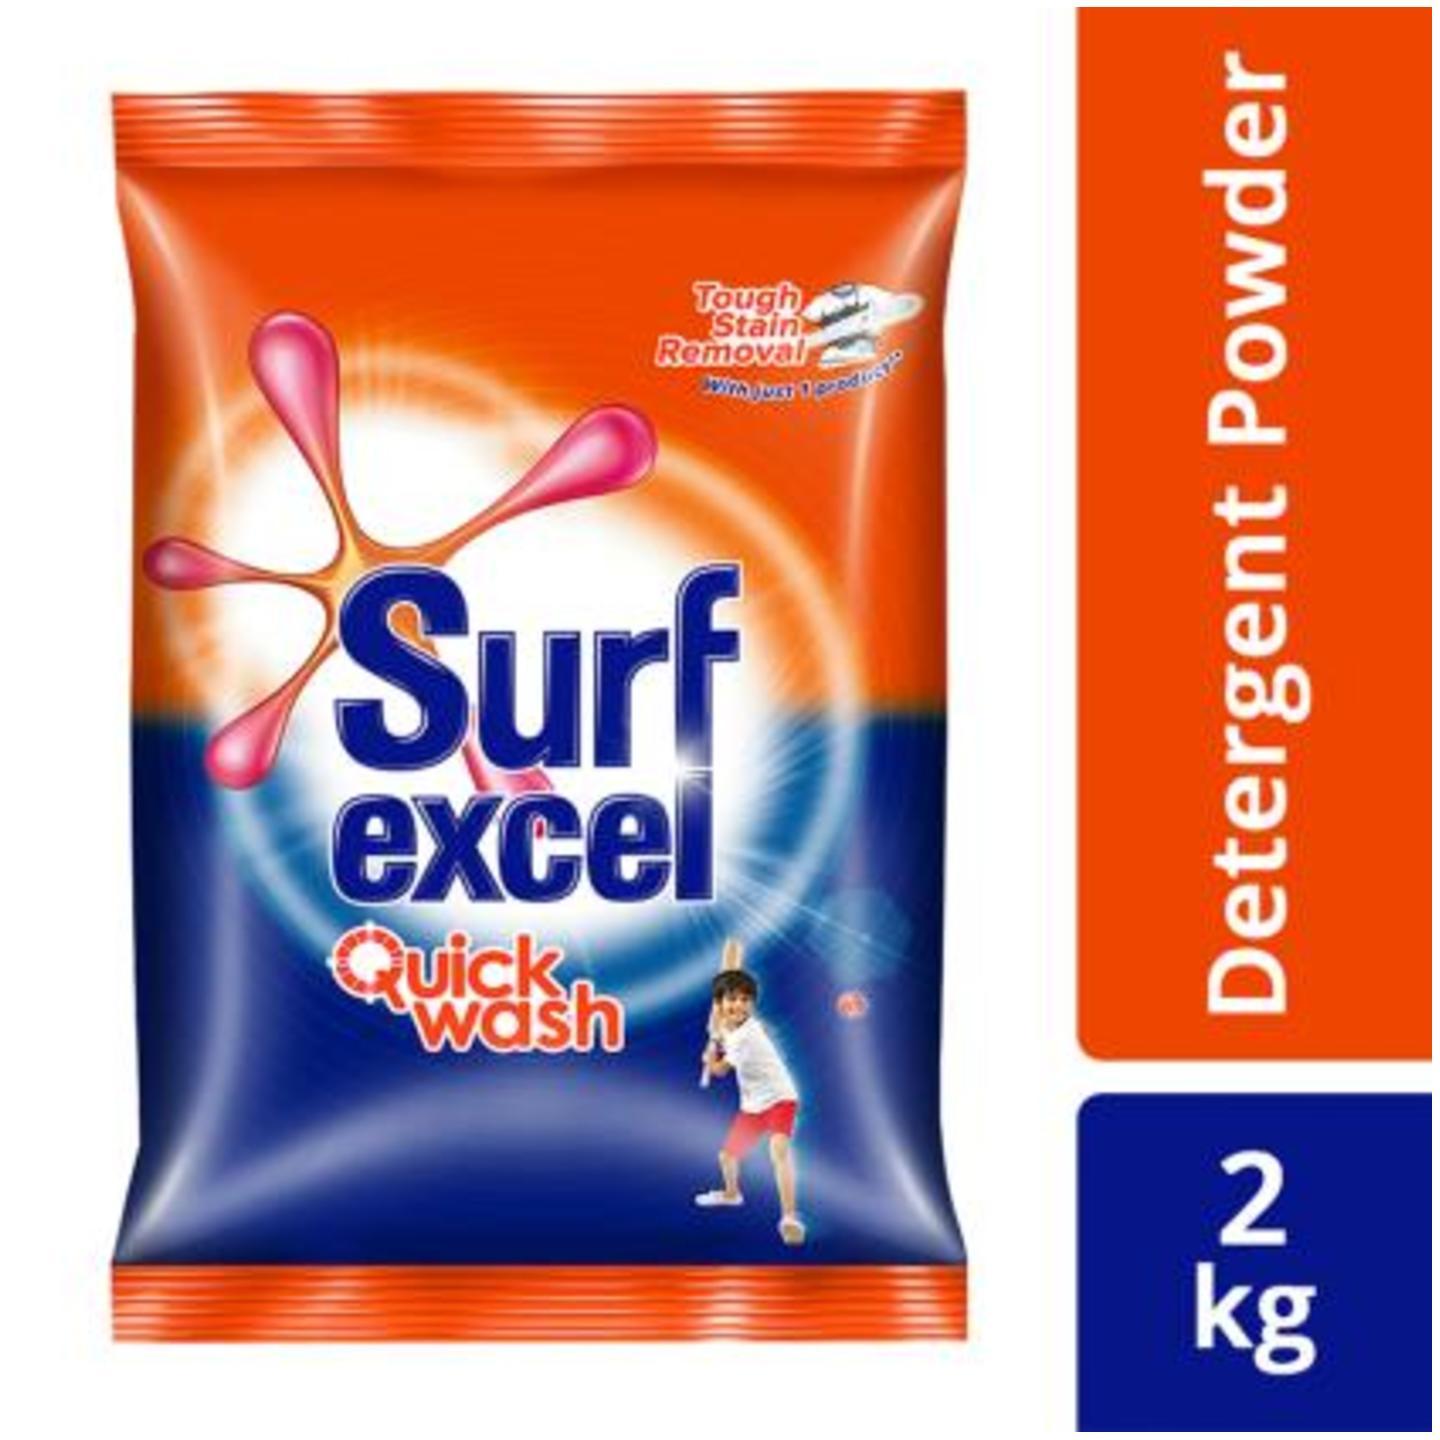 Surf Excel Quick Wash Detergent Powder 2 kg